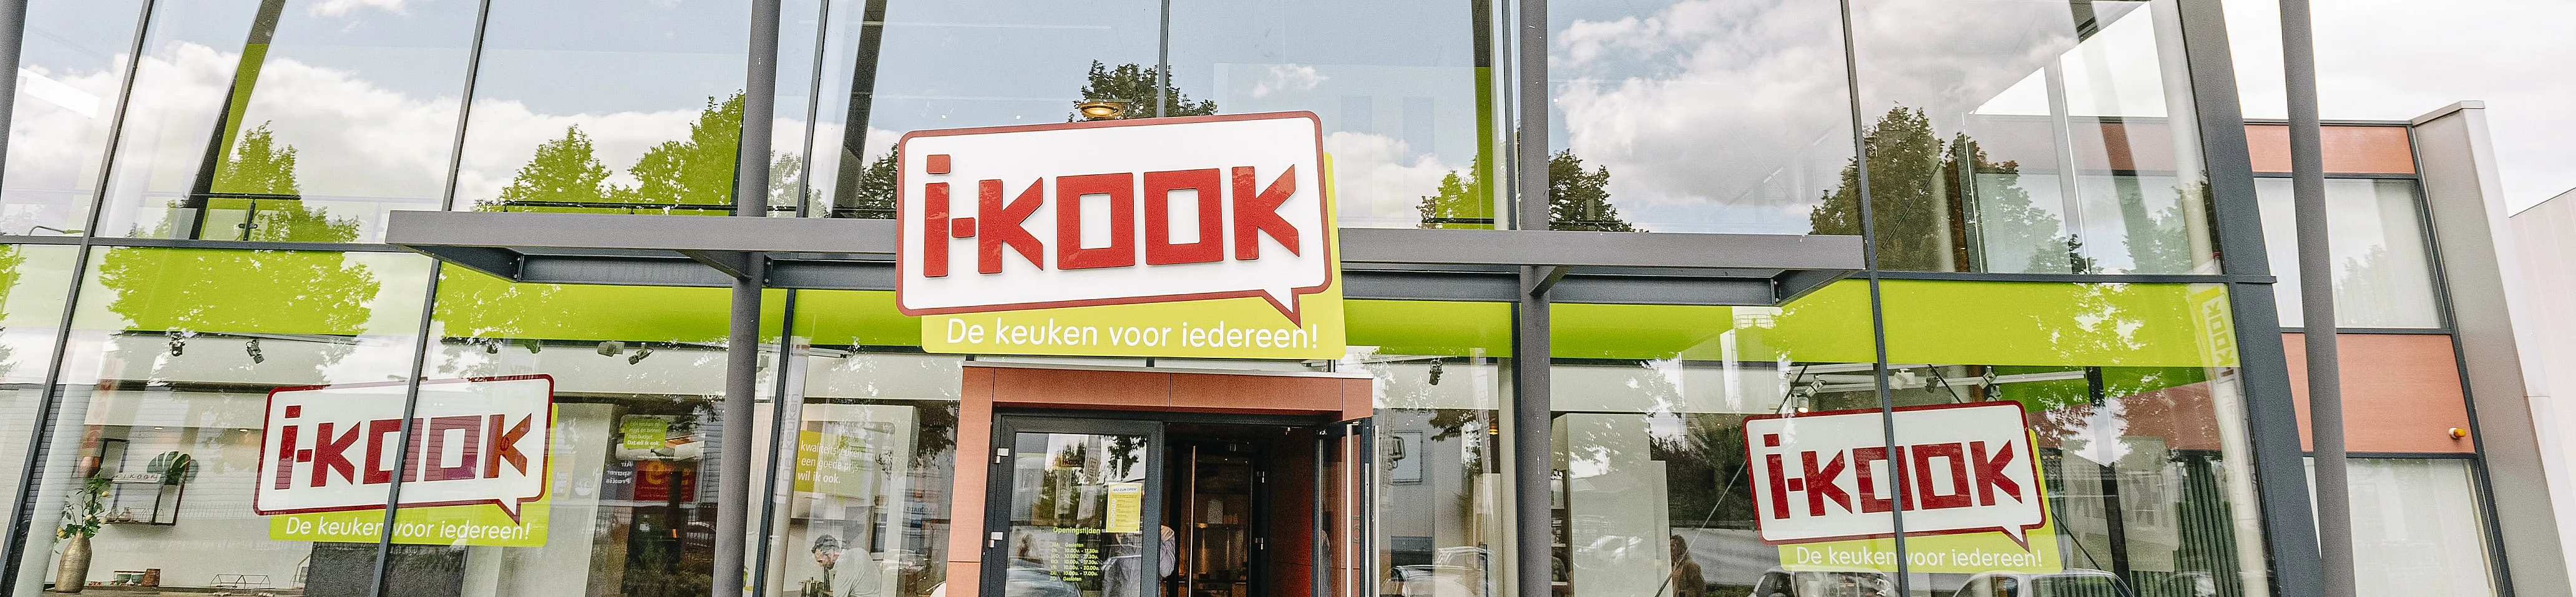 i-kook-huissen-top-banner